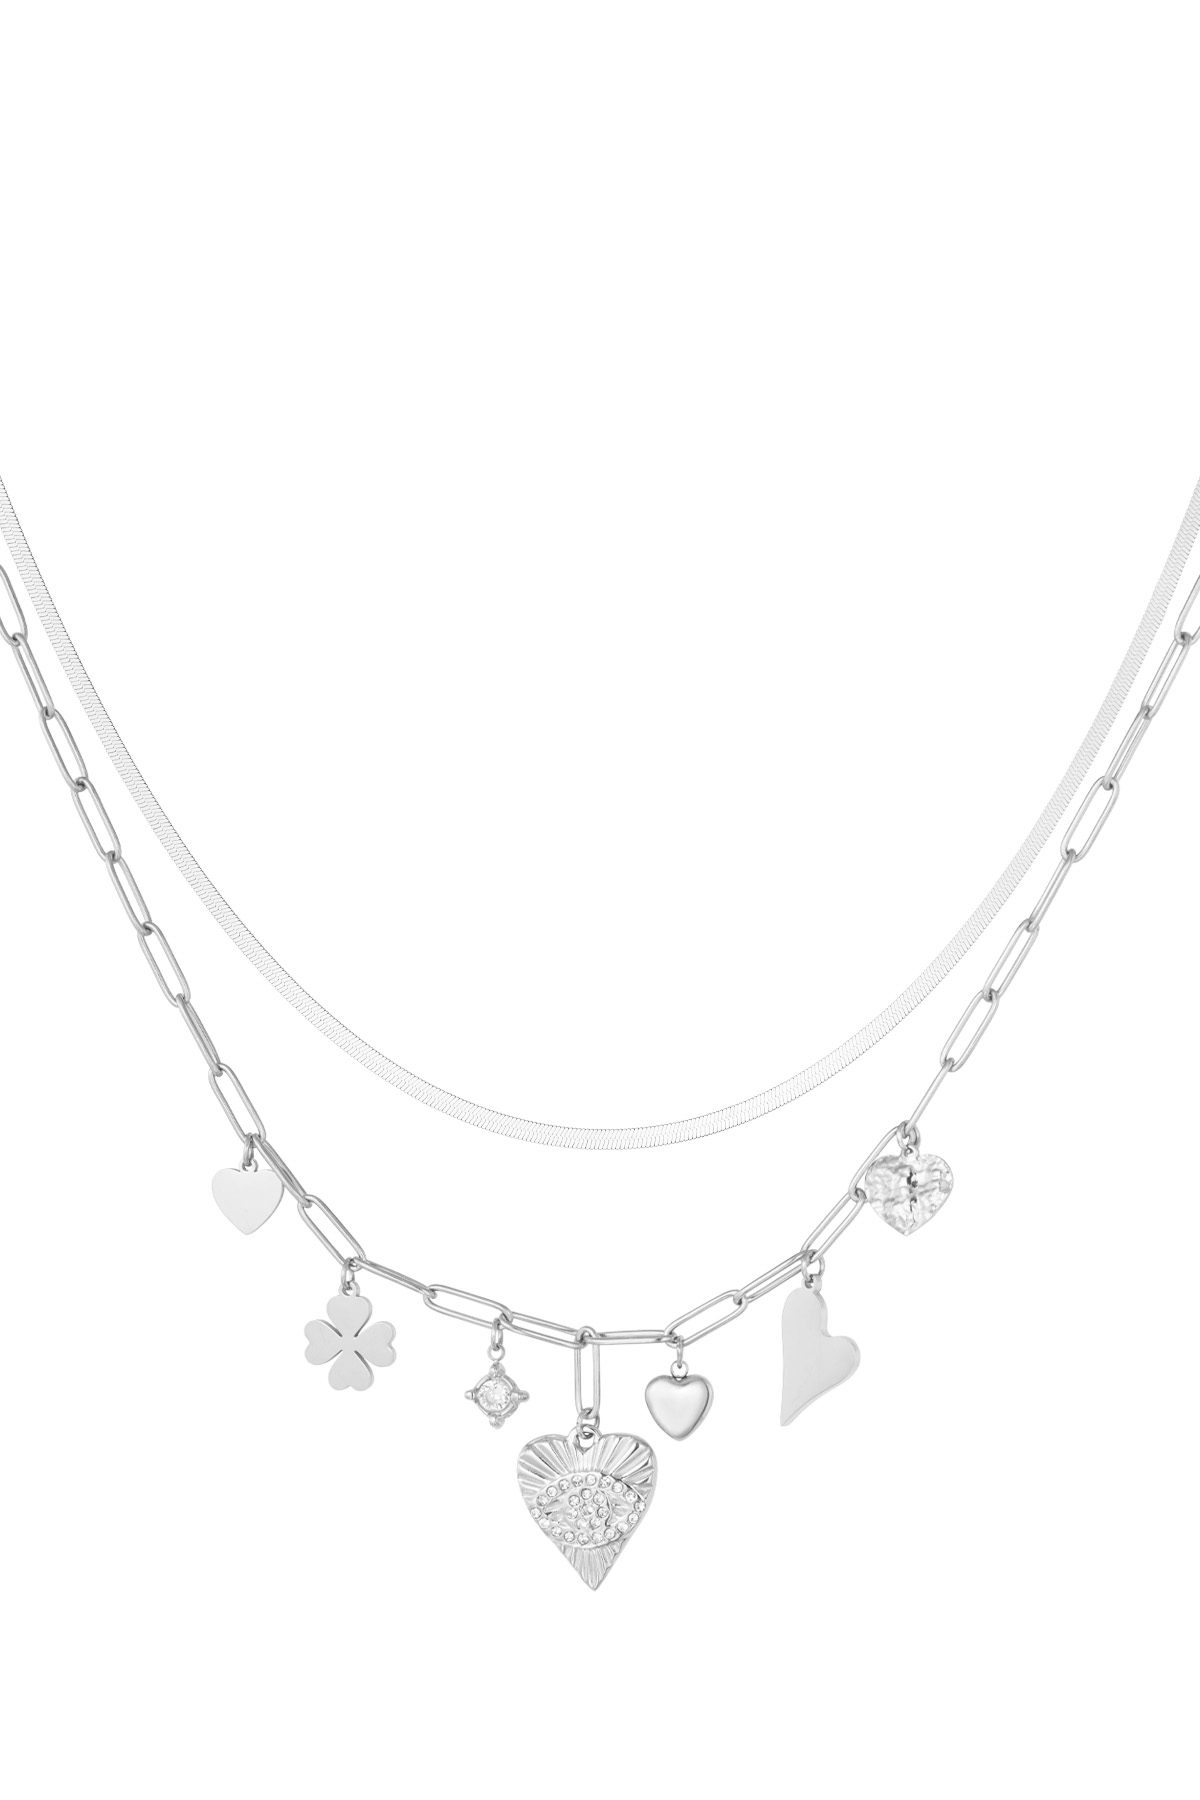 Charm-Halskette Glückszahl 7 – Silber